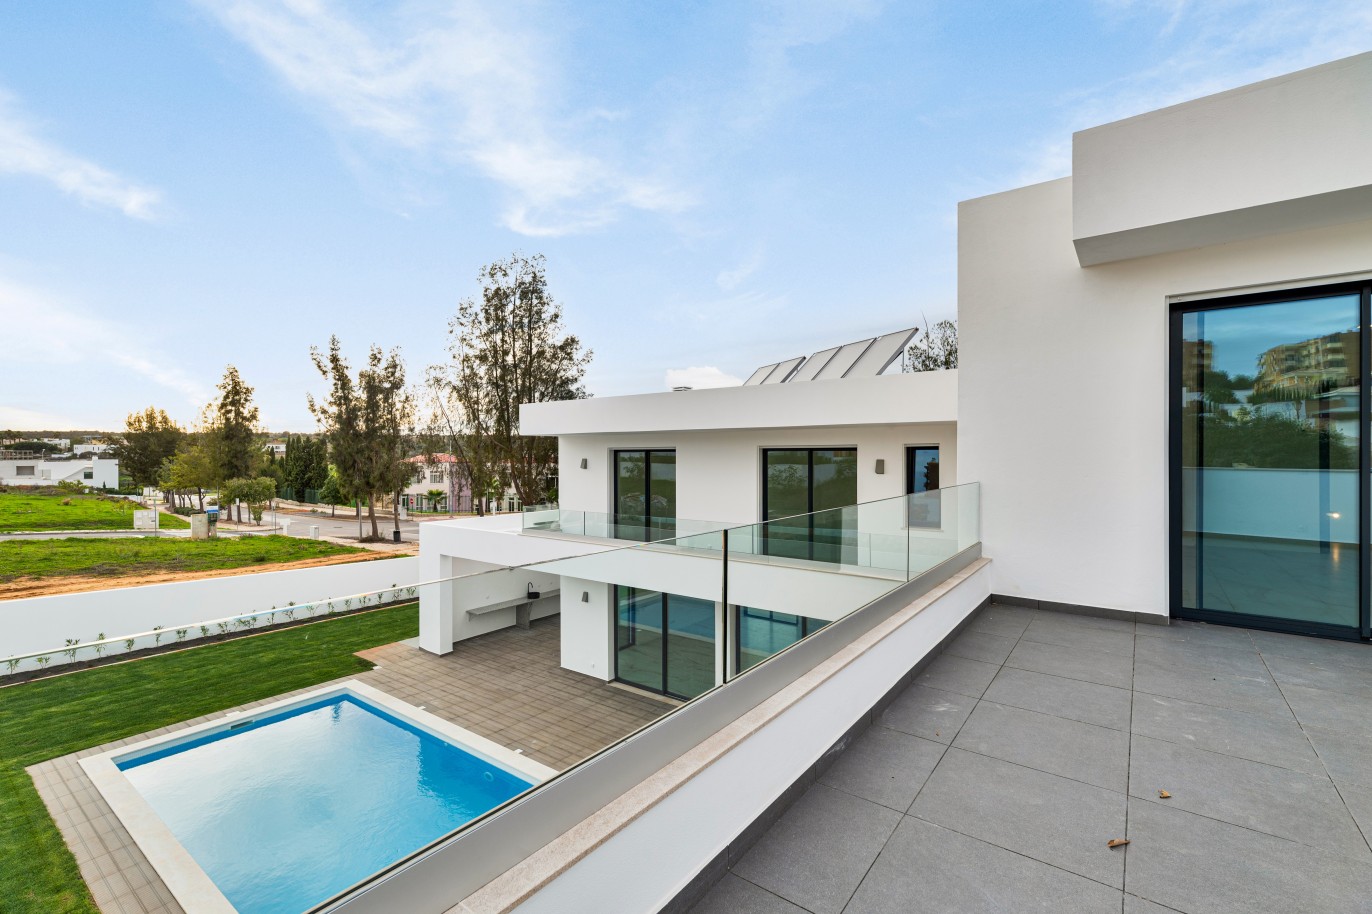 Moradia V4, com piscina, para venda em Porto de Mós, Lagos, Algarve_243631